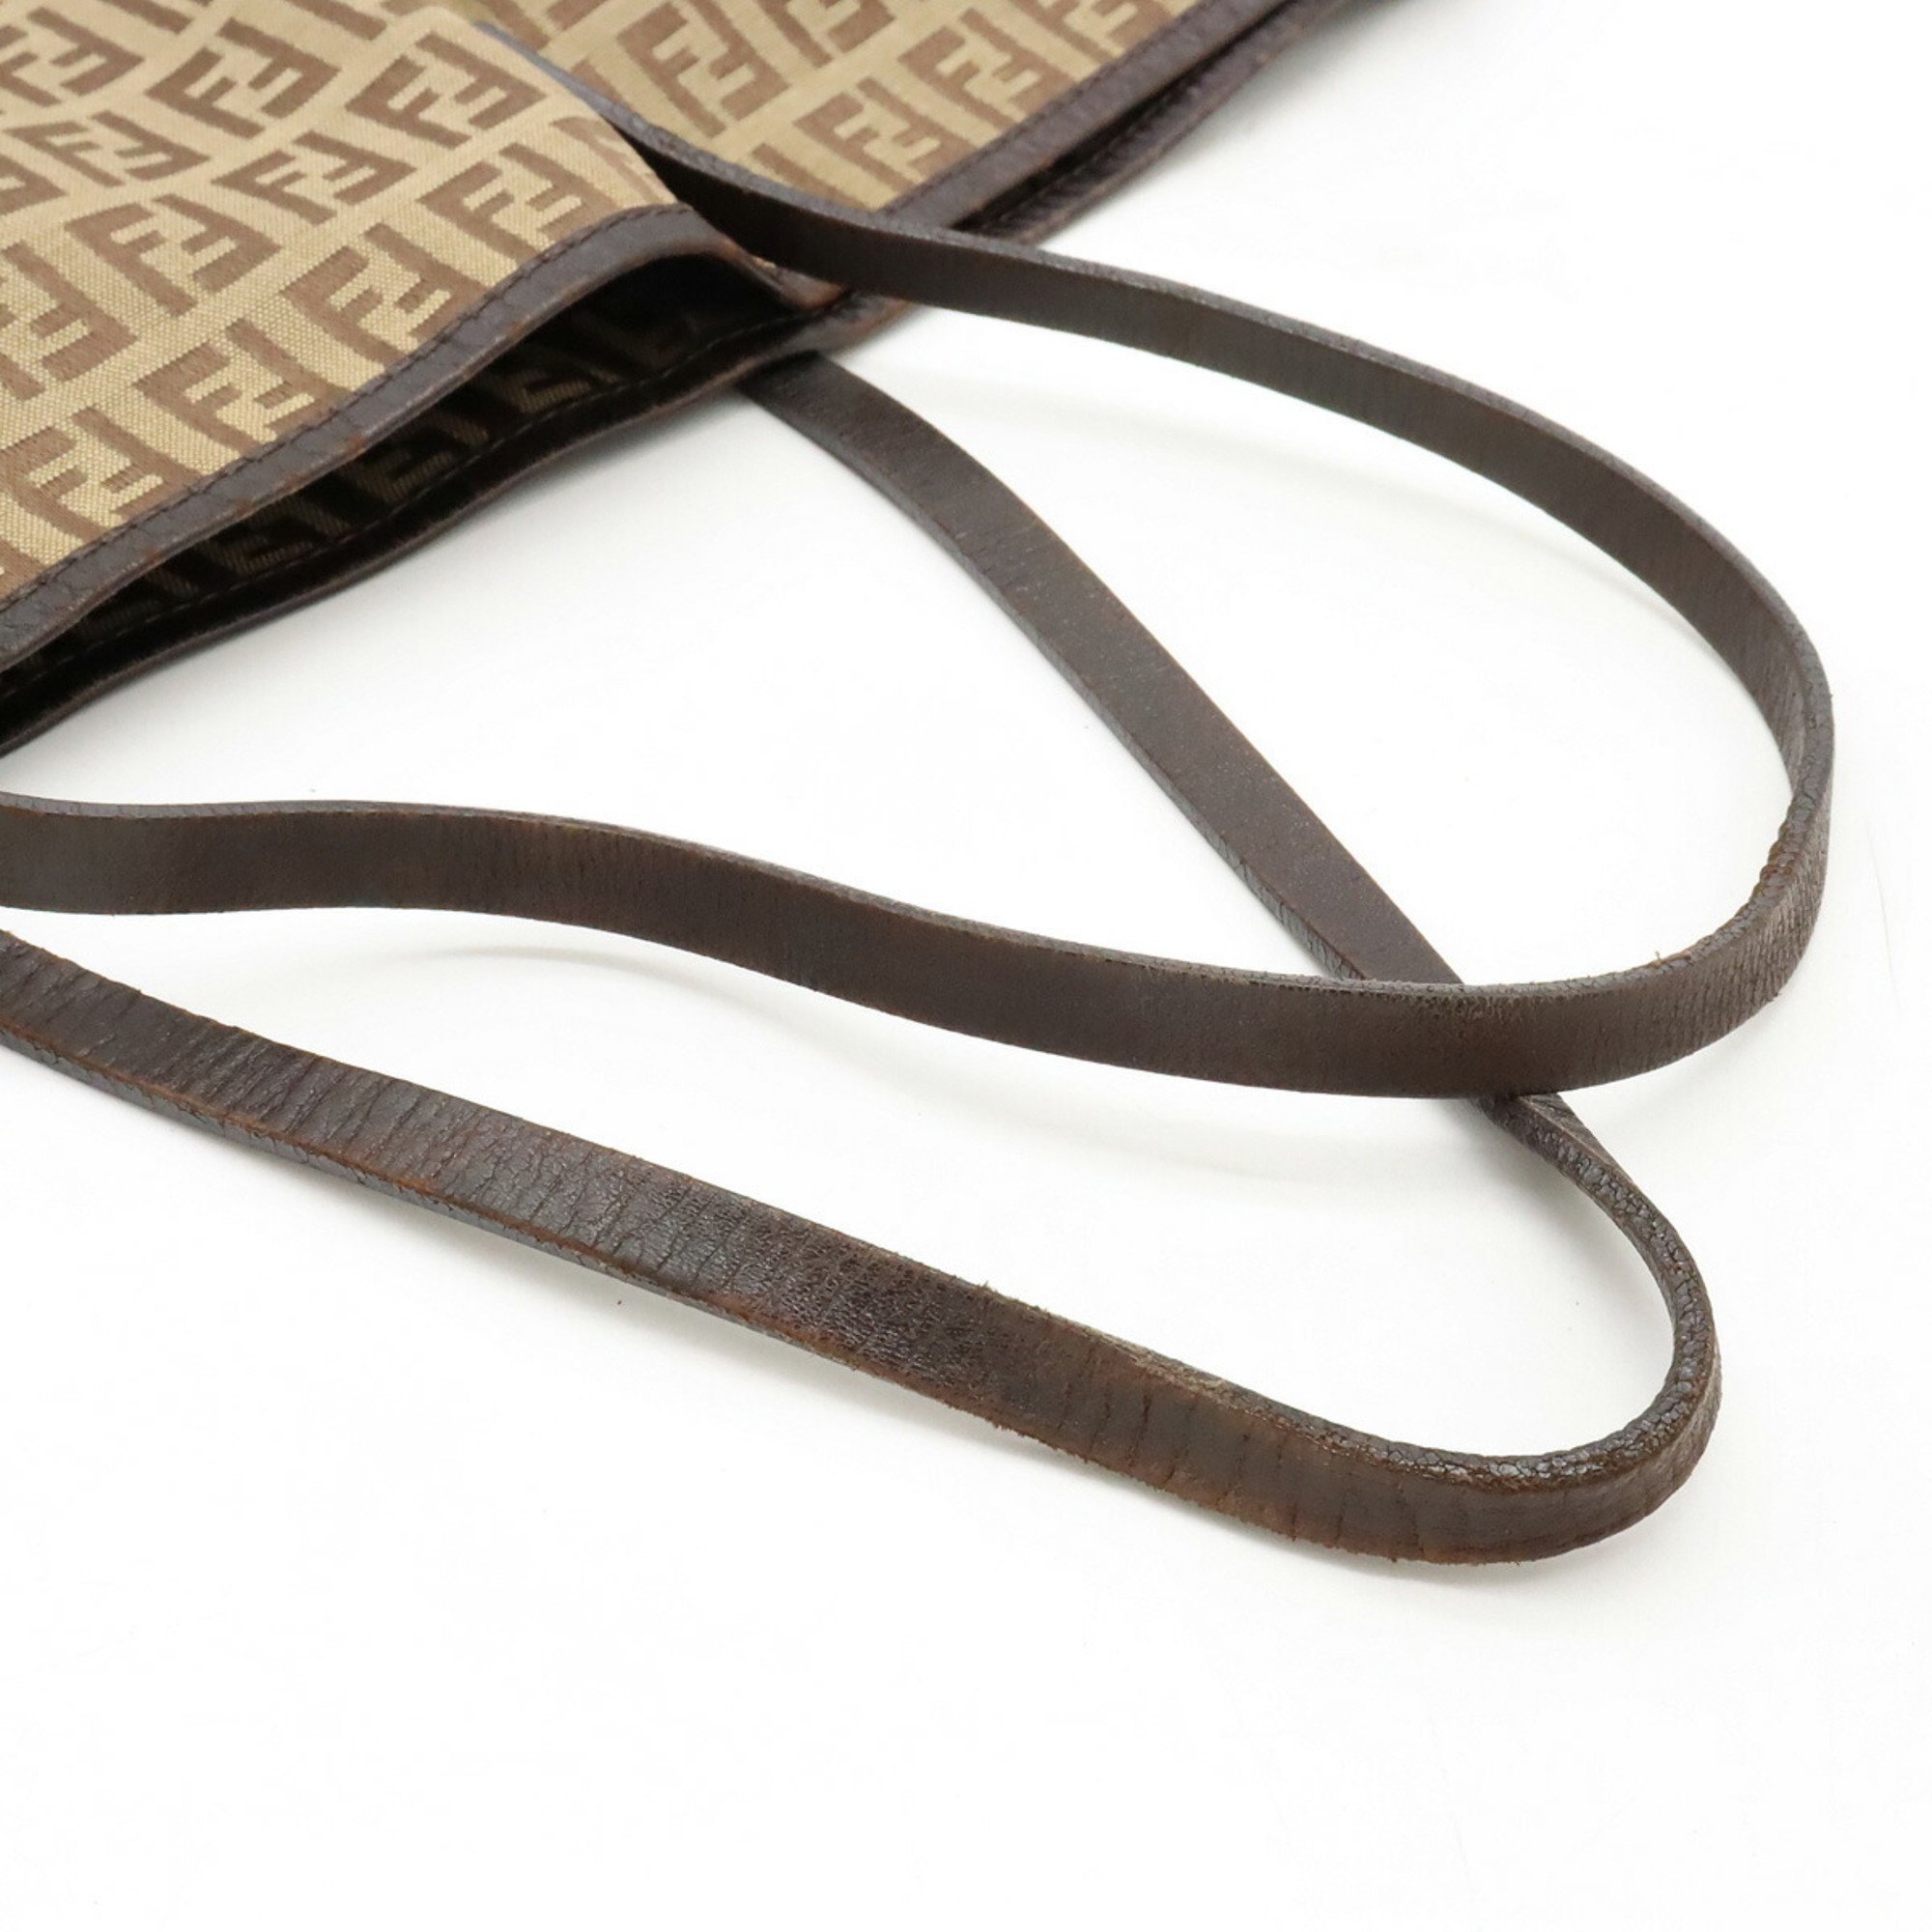 FENDI Zucca pattern tote bag canvas leather beige dark brown 8BH005